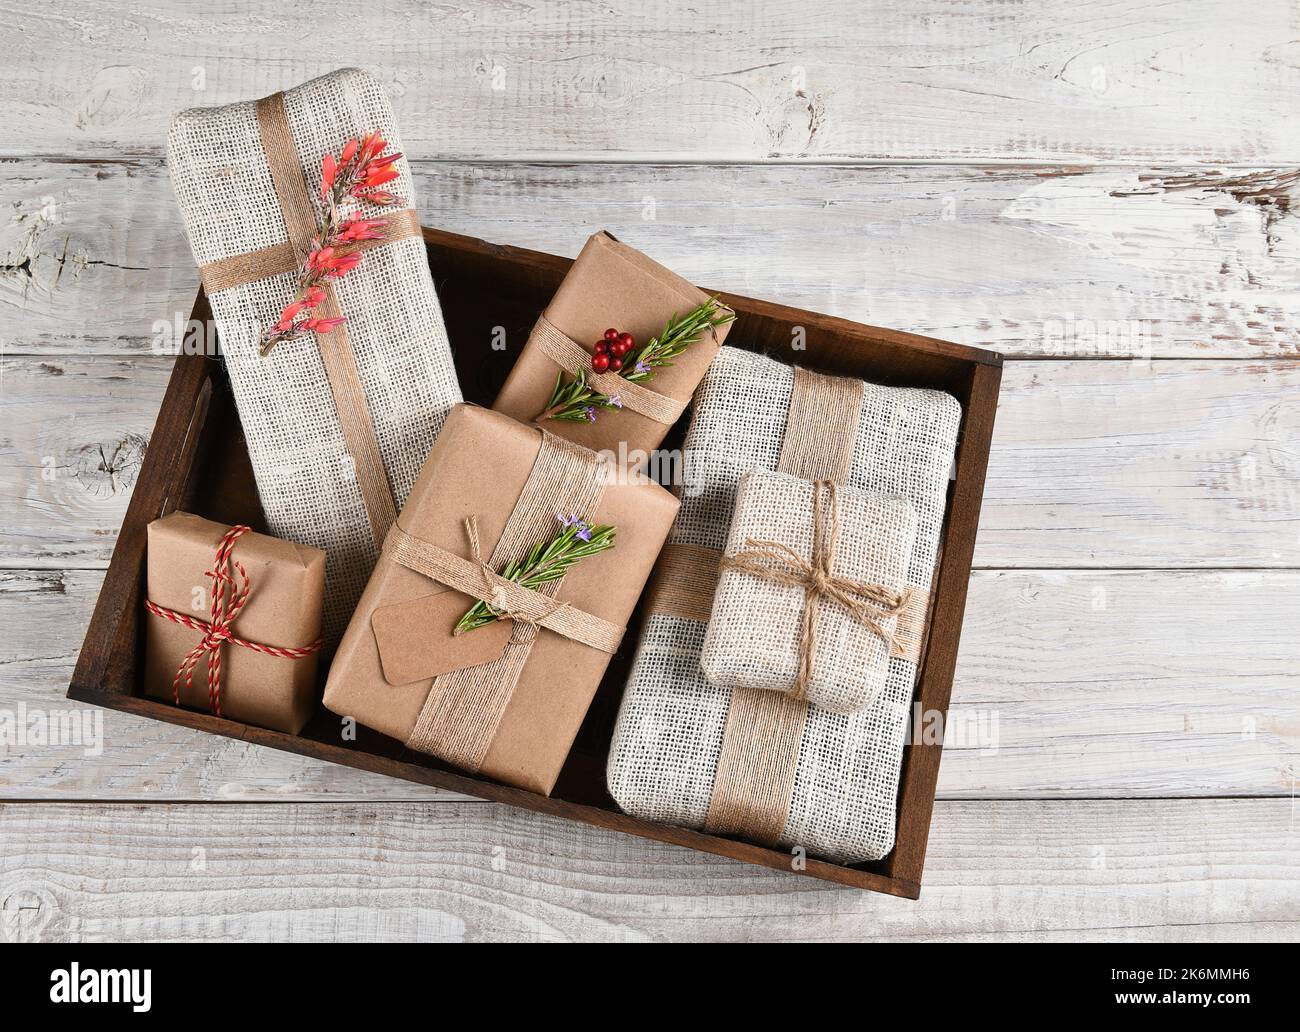 Regalos de Navidad. Regalos envueltos en burlap y papel marrón liso en una caja de madera. Foto de stock